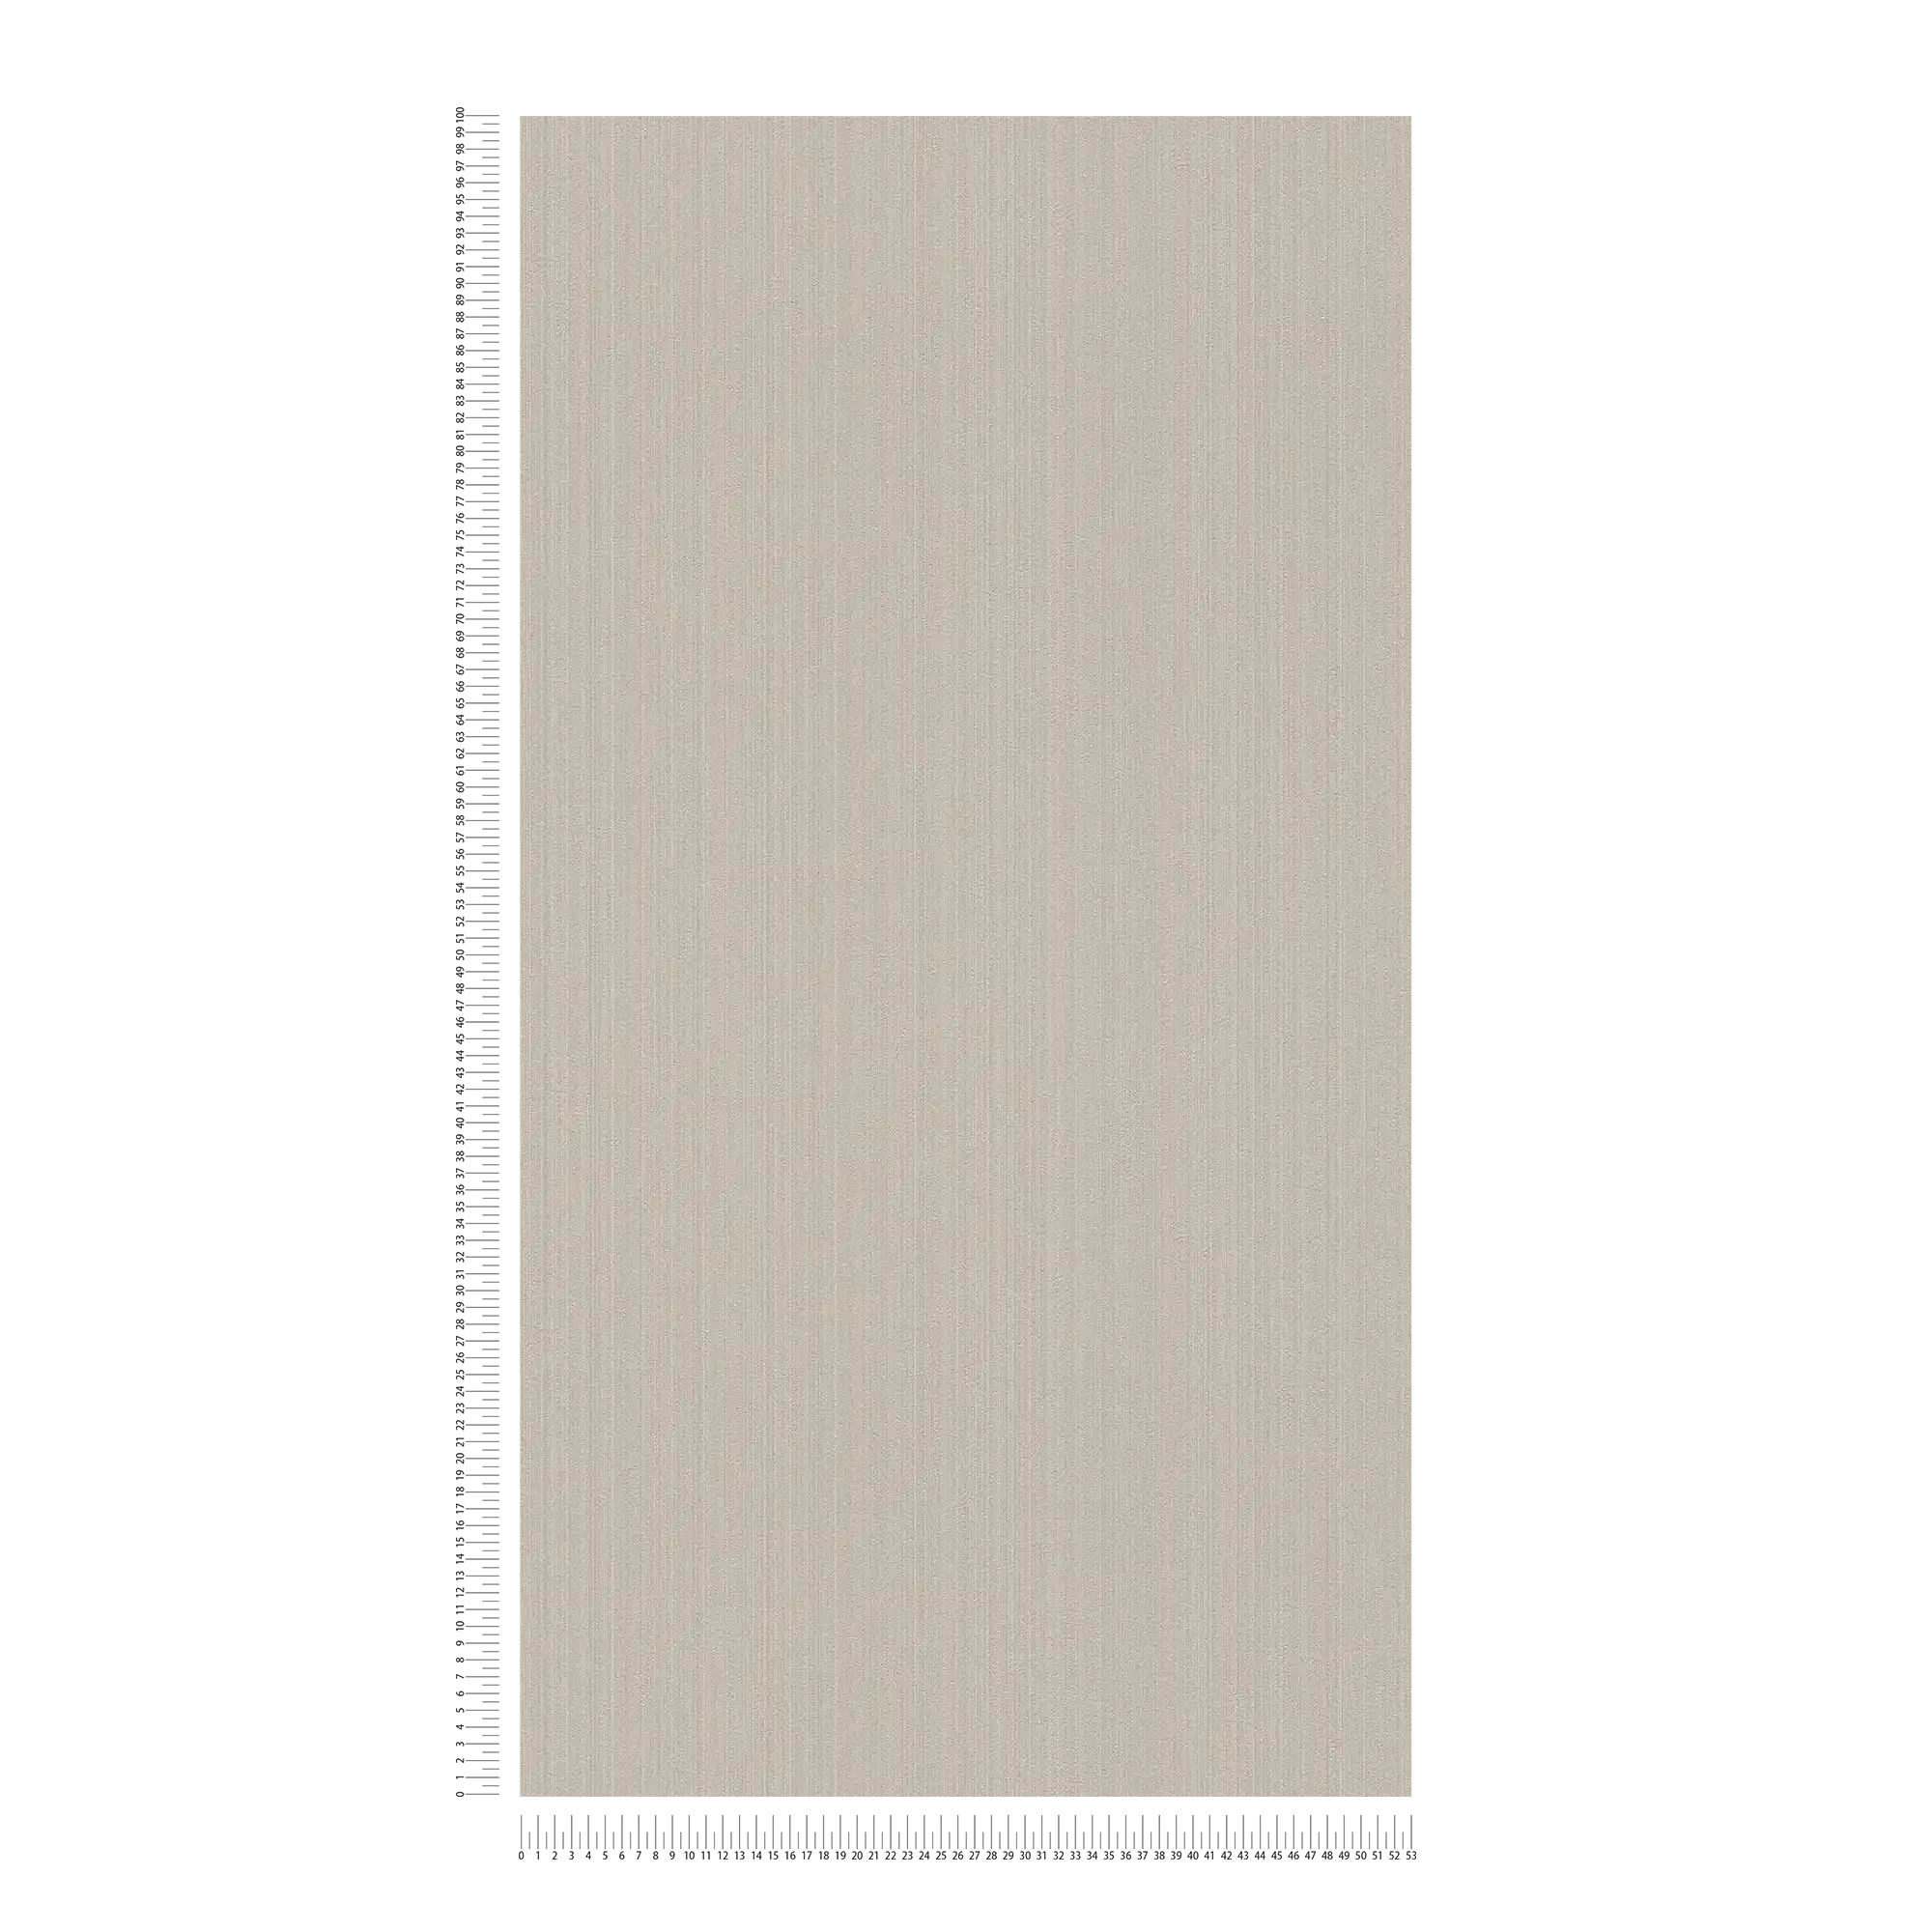             Einfarbige Tapete Beige Grau mit seidenmatt Finish
        